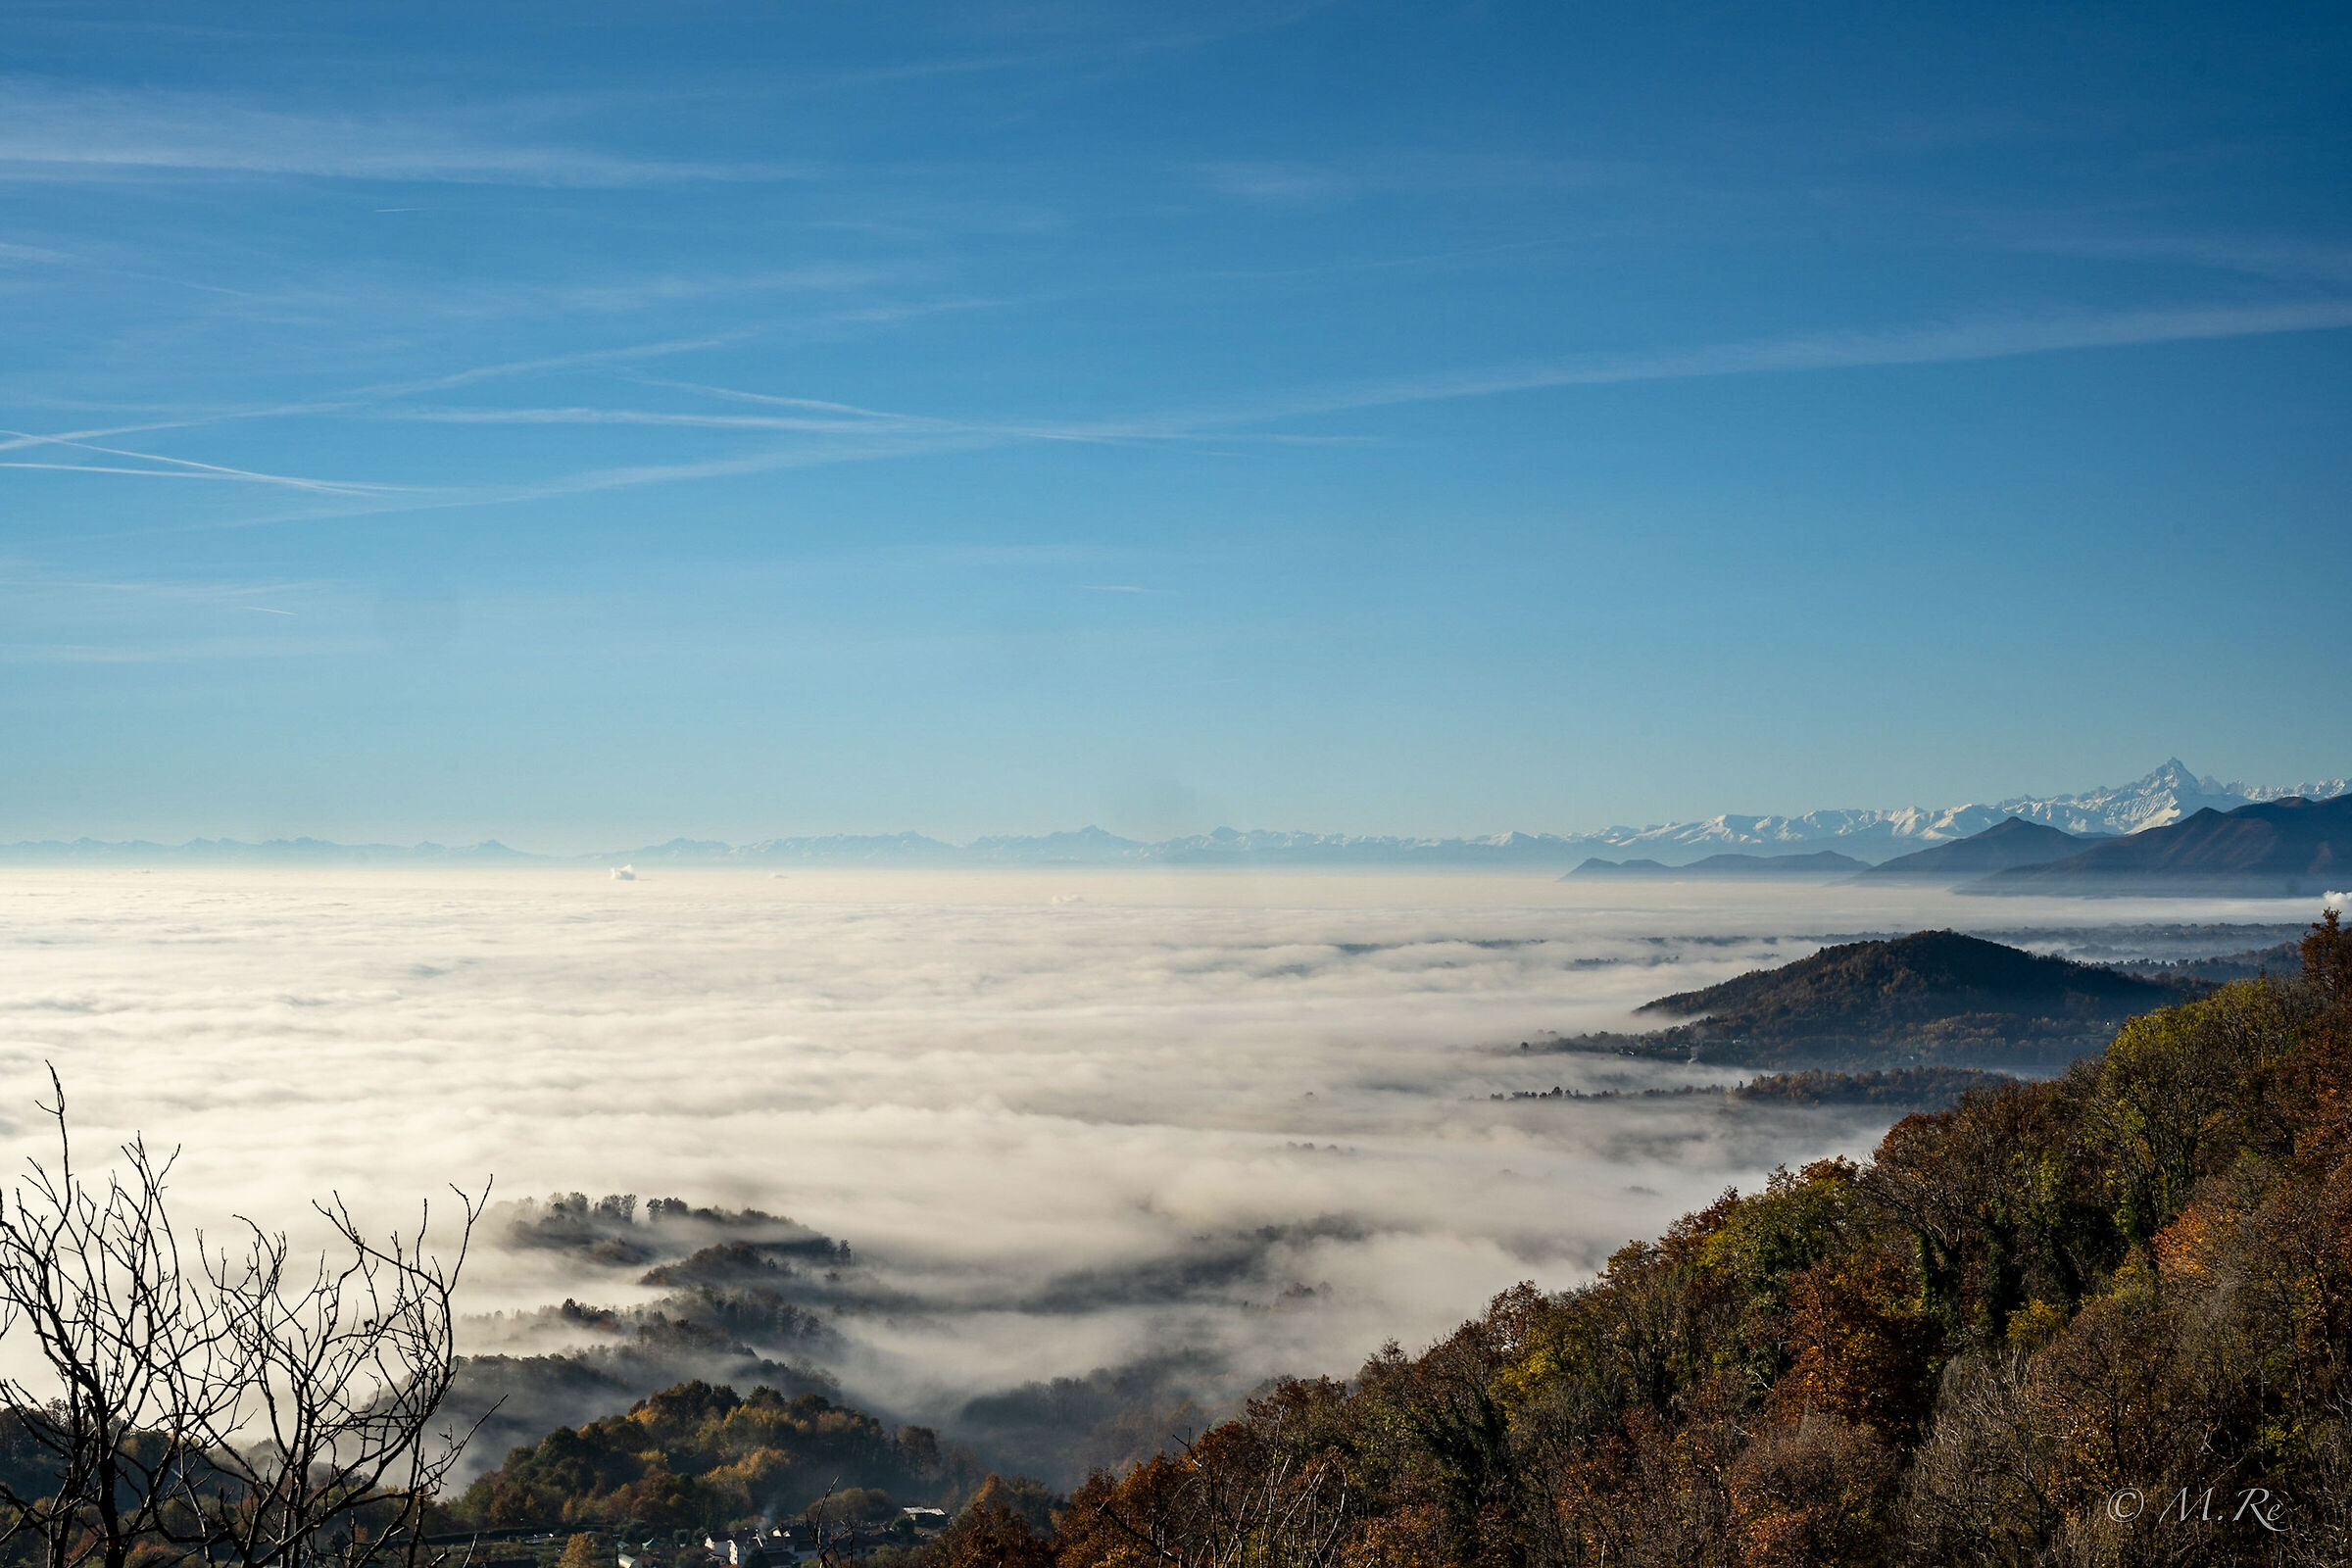 Mare di nuvole sulla Pianura Padana...